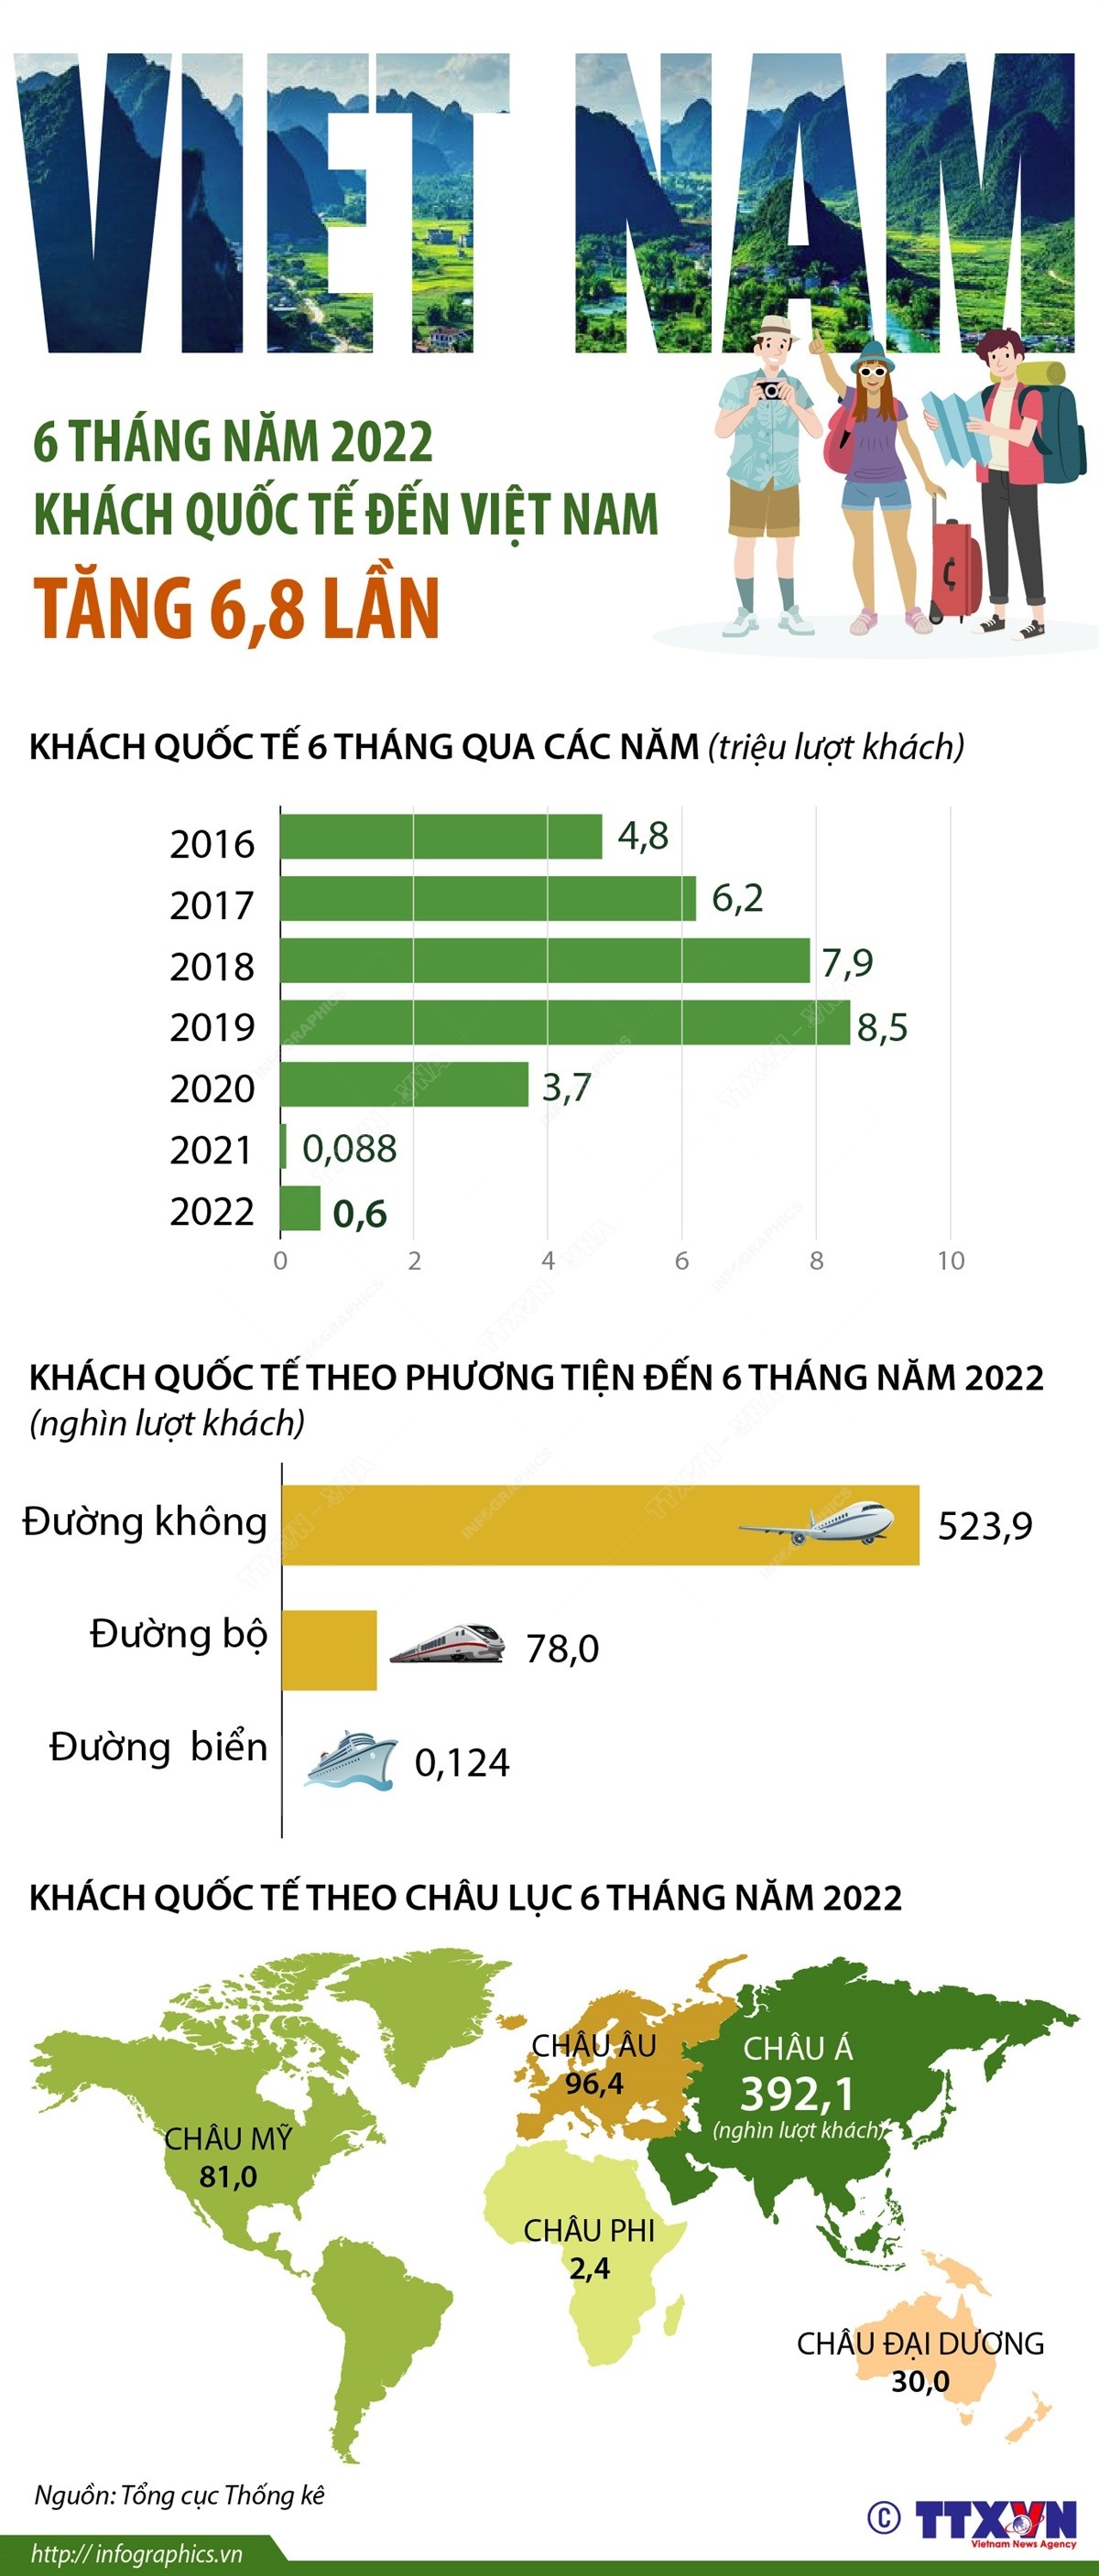 infographic-2022-6-30-khach-qt-6thang-2022-ruby-1656641851.jpg